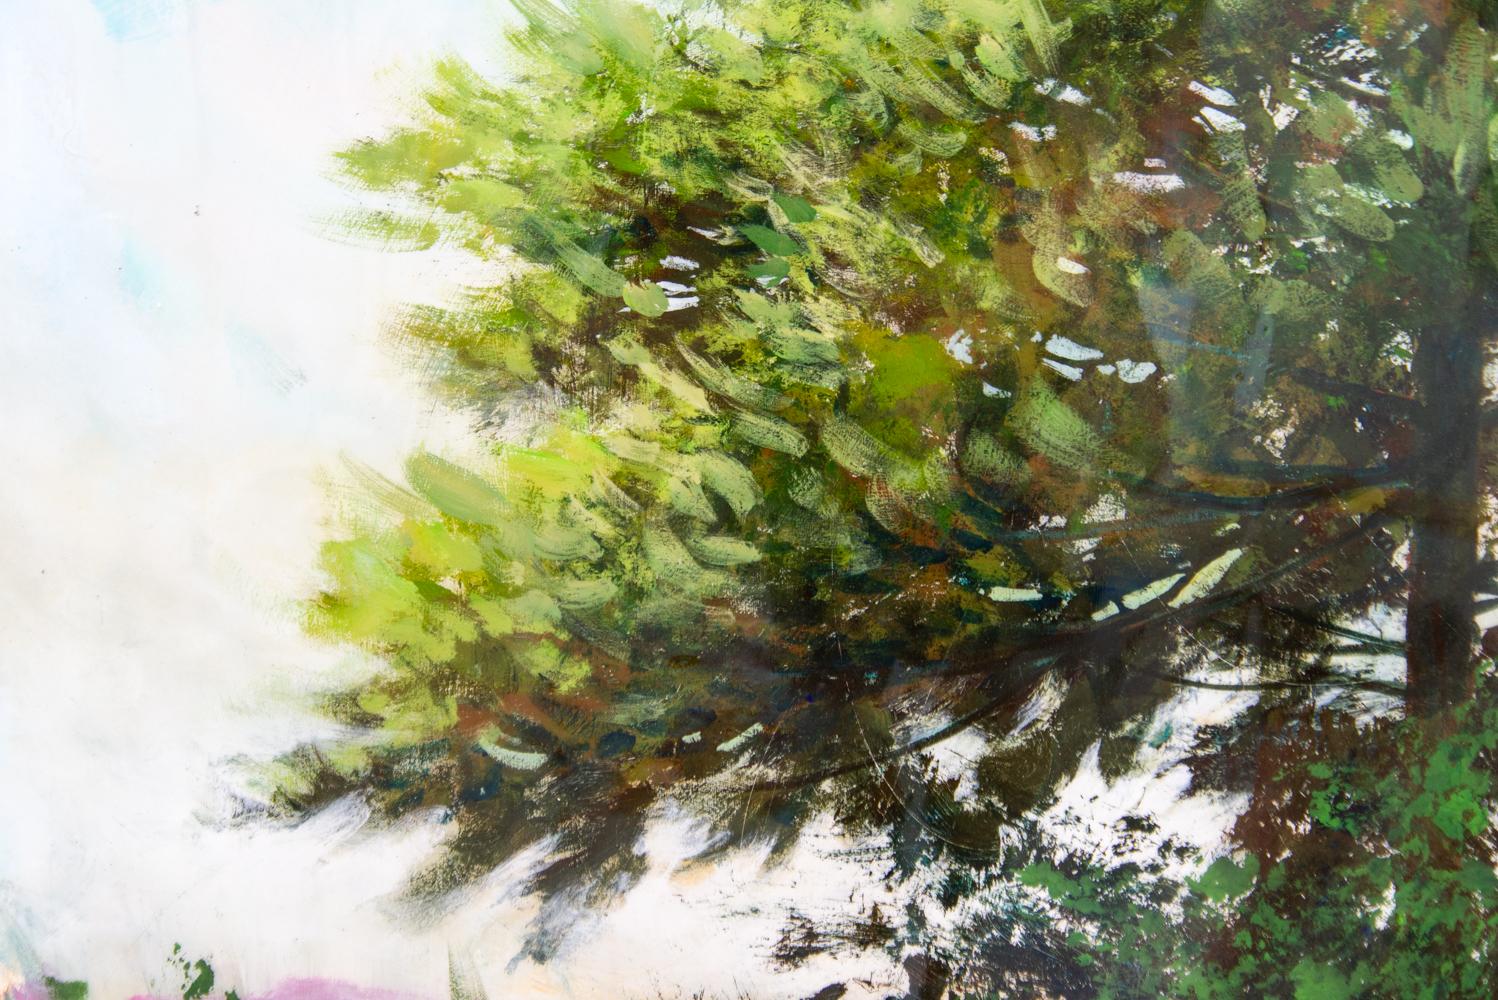 Eine prächtige, ausgewachsene Kiefer steht hoch in dieser ruhigen Landschaft von Peter Hoffer. Das satte Grün der Tannenbäume kontrastiert mit dem tiefen Türkisblau des Himmels und der pastoralen Landschaft. Hoffer hat eine ganze Serie von